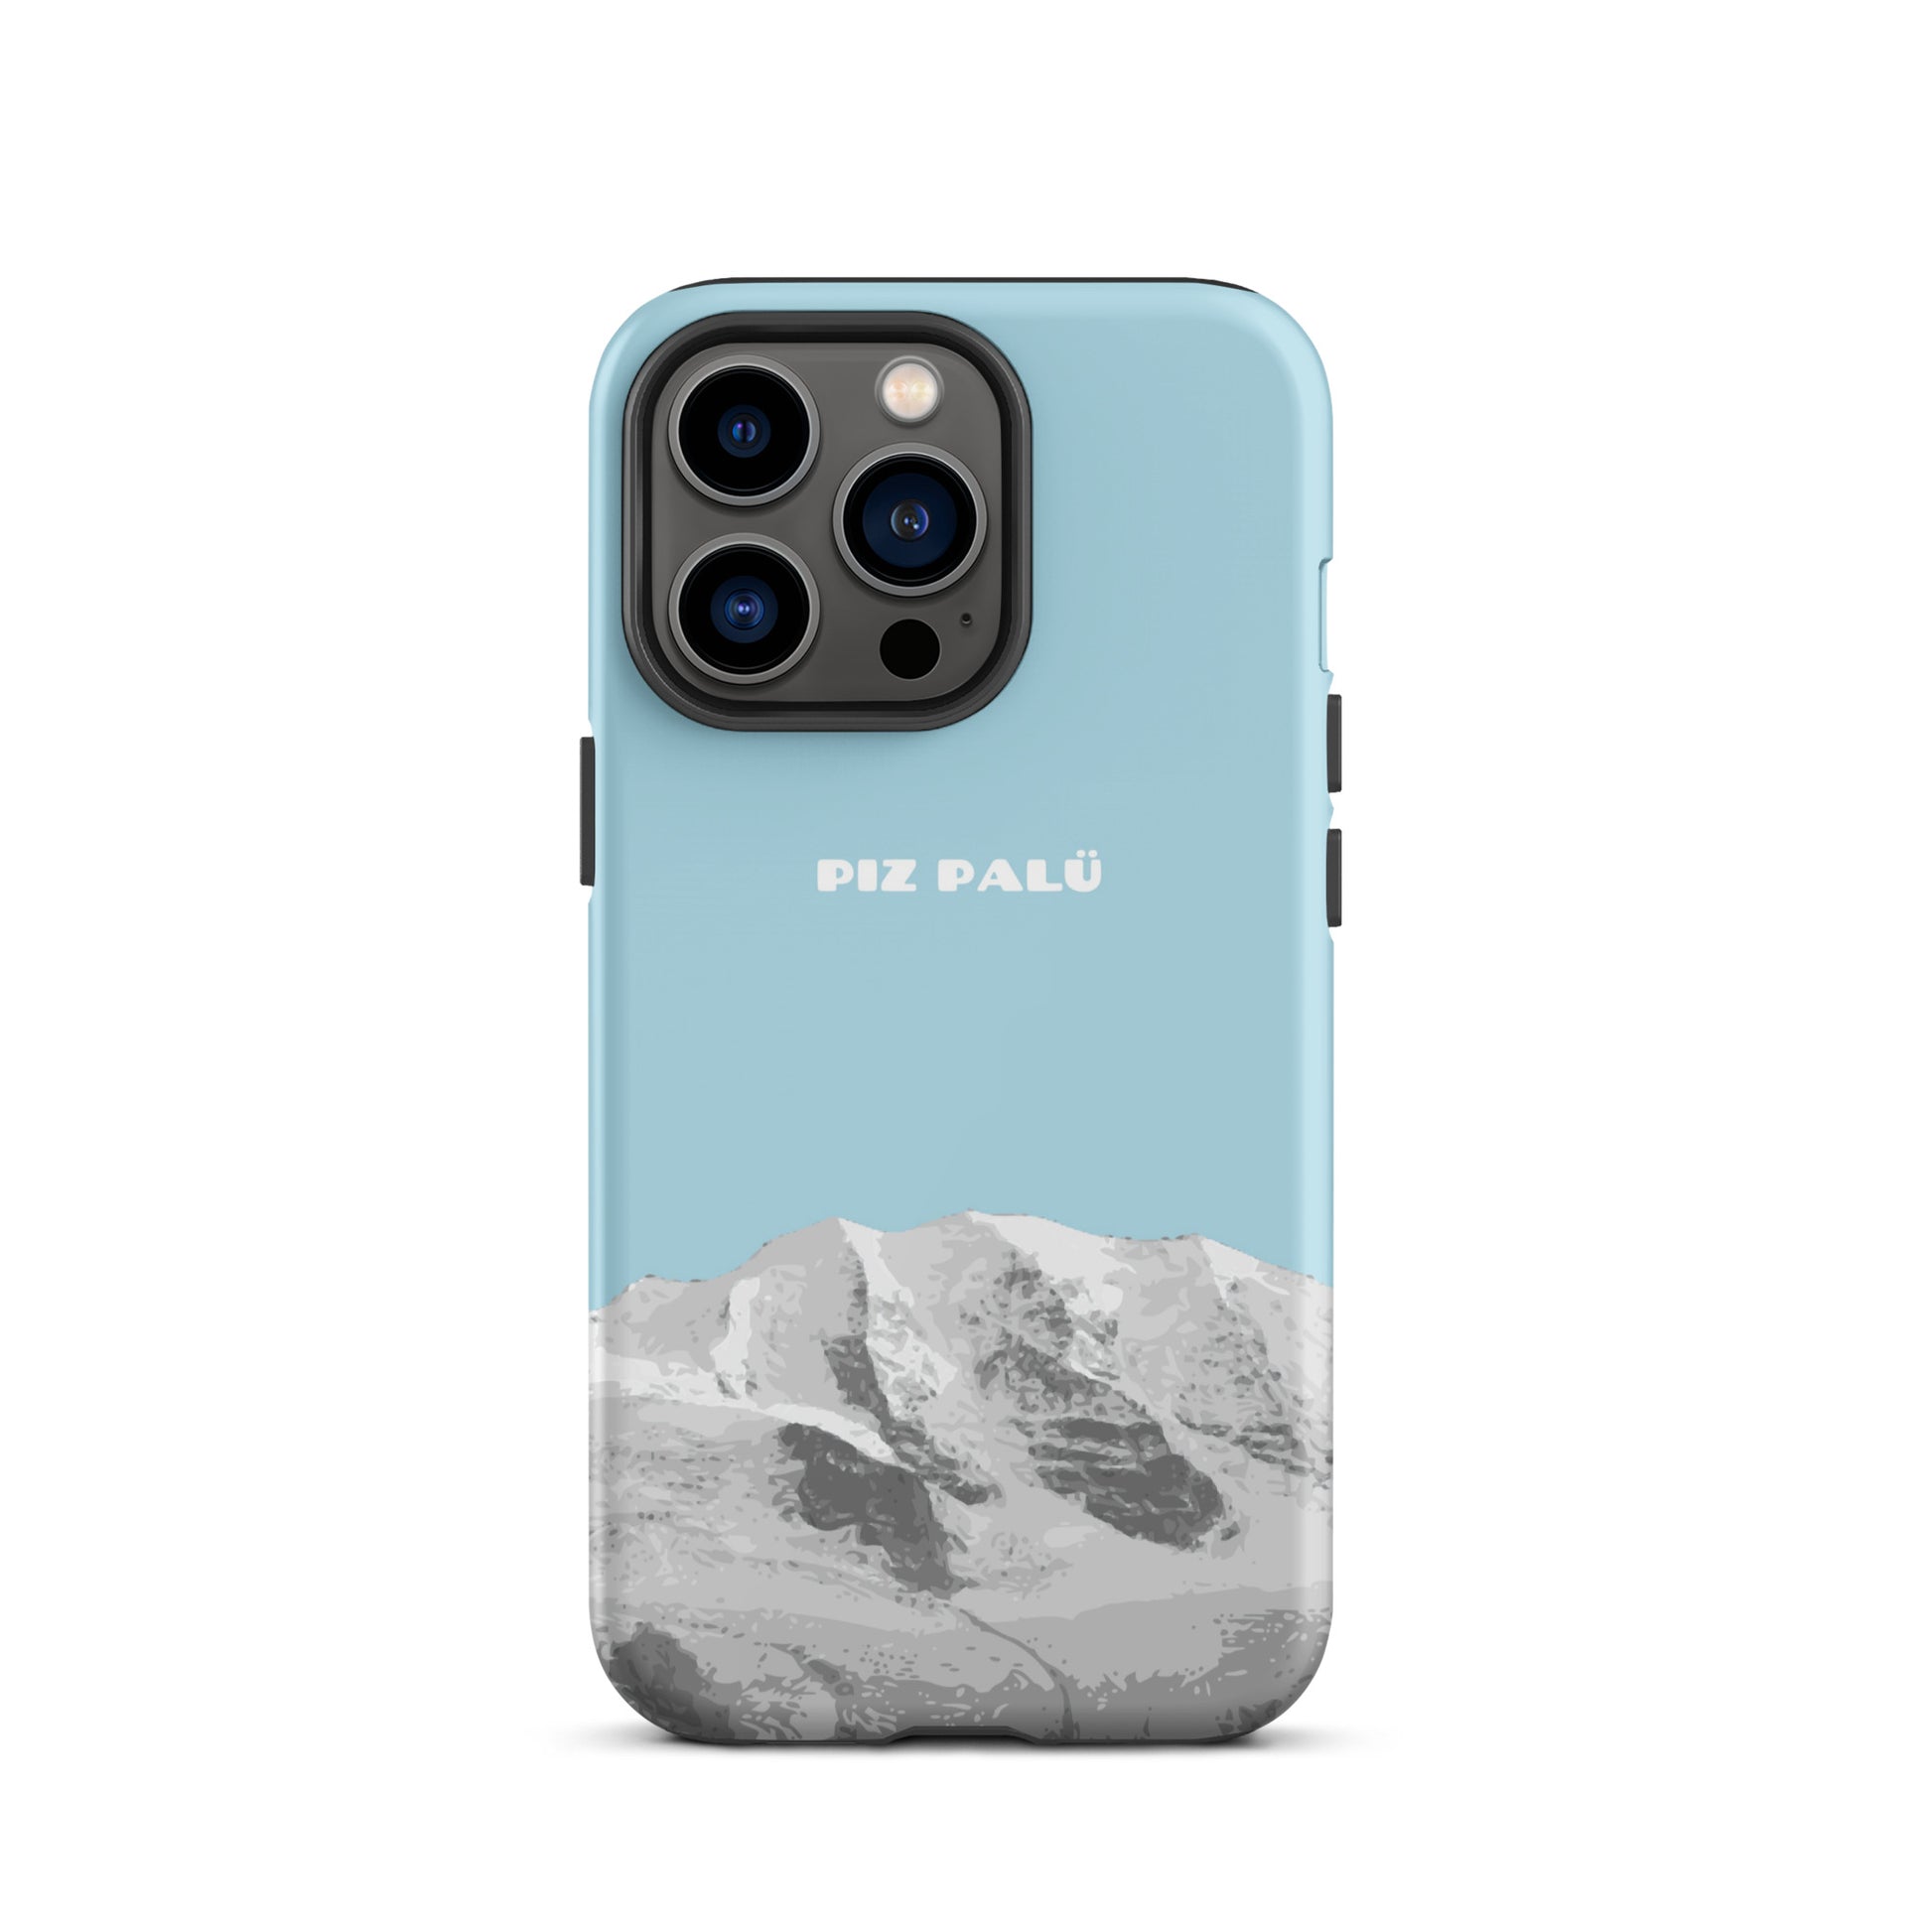 Hülle für das iPhone 13 Pro von Apple in der Farbe Hellblau, dass den Piz Palü in Graubünden zeigt.